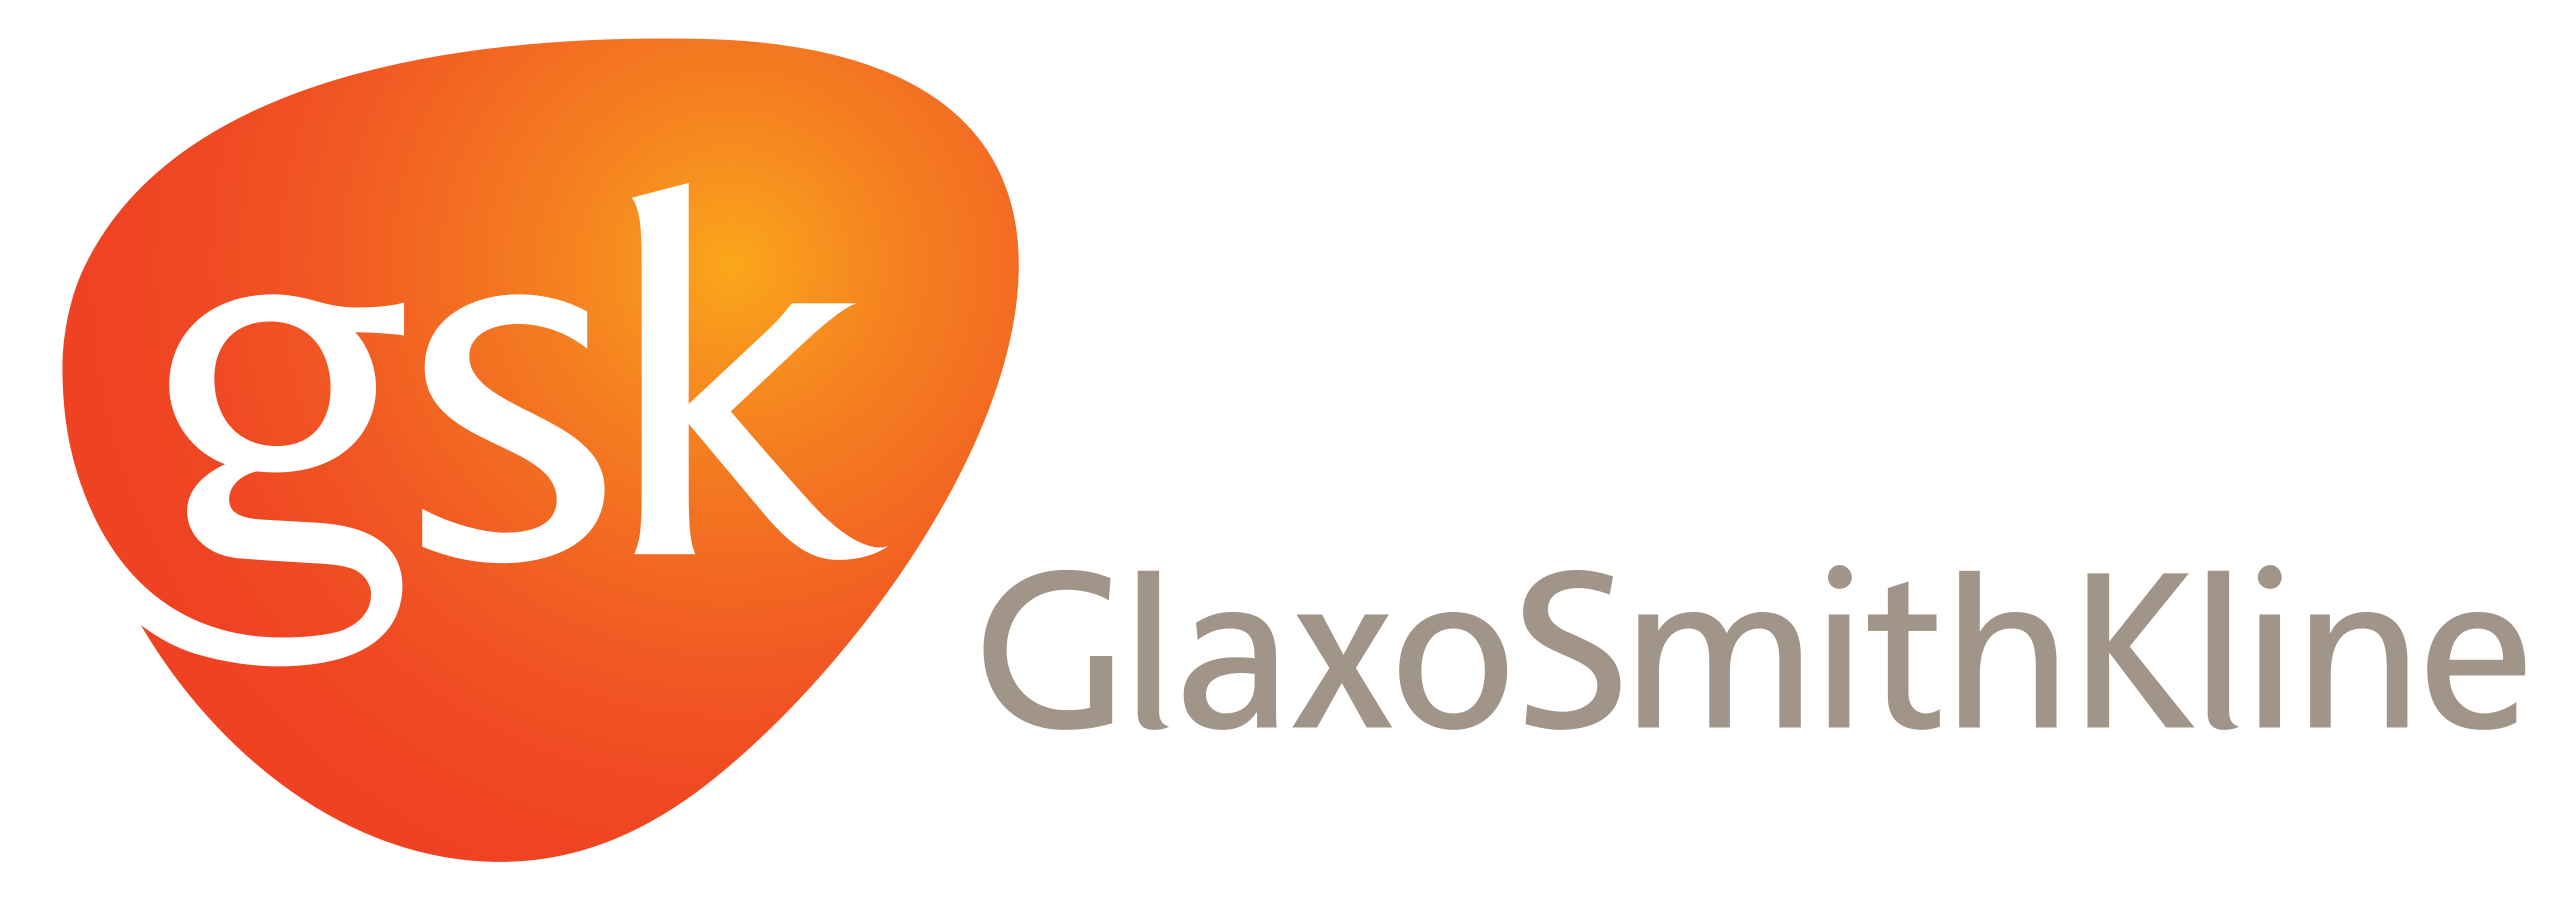 2560px-GlaxoSmithKline_logo.svg